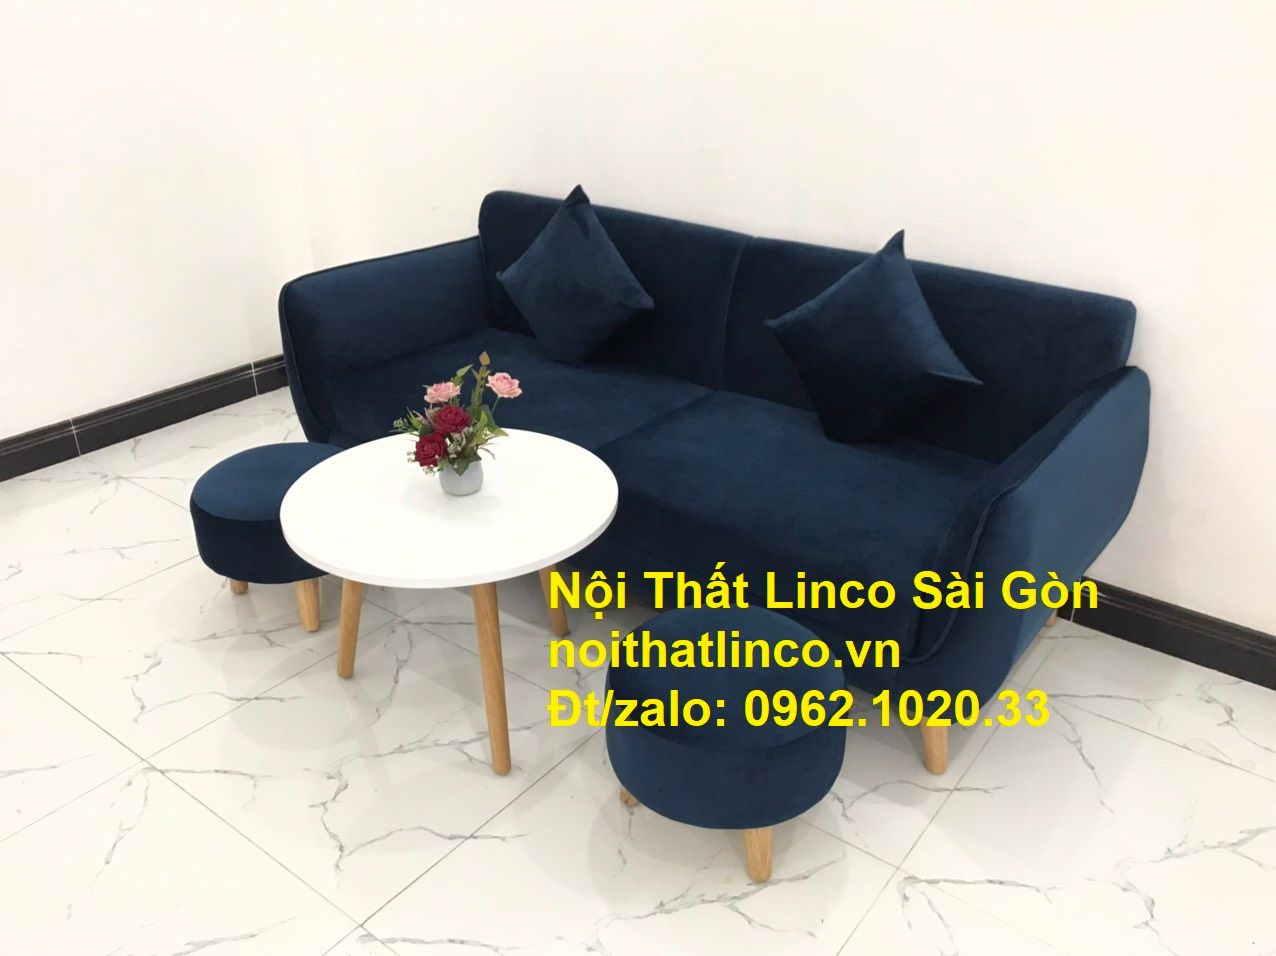  Bộ bàn ghế sofa băng văng xanh dương đậm giá rẻ Nội thất Linco Sài Gòn 